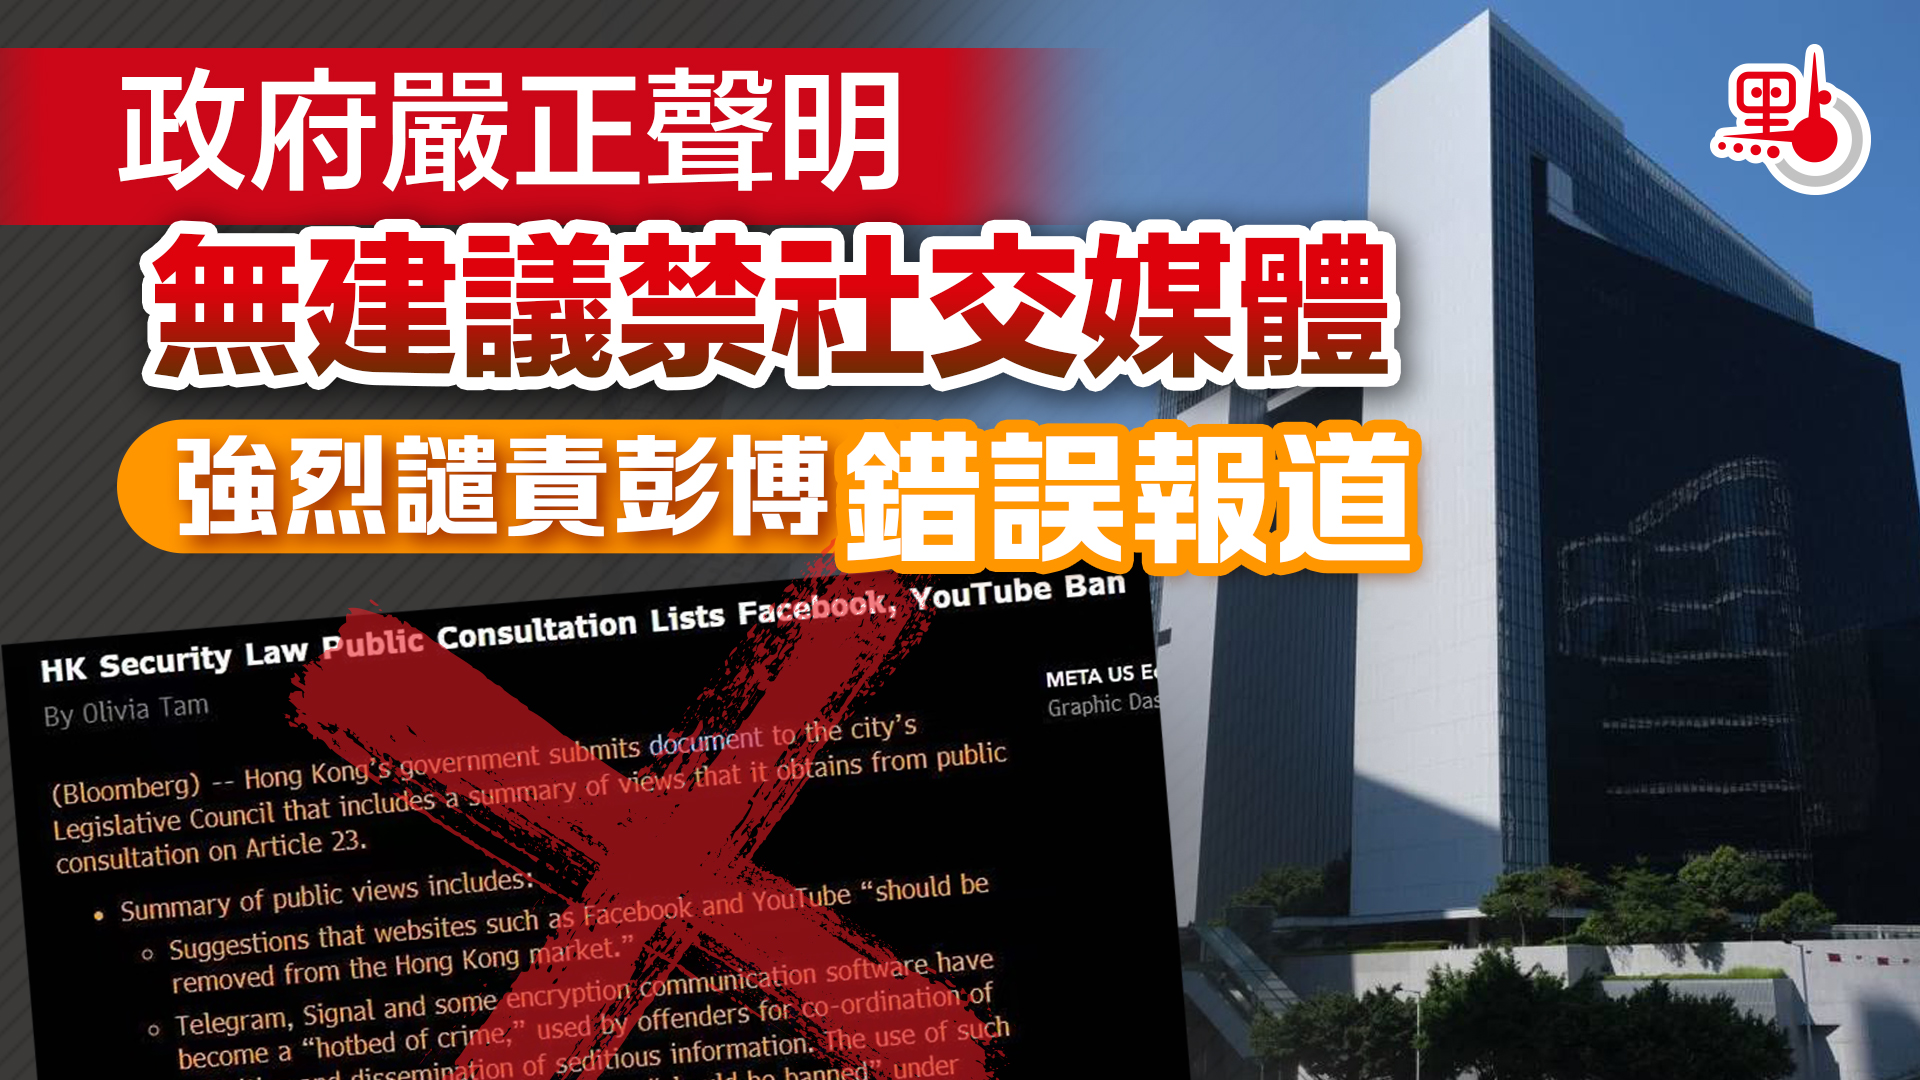 政府嚴正聲明無建議禁社交媒體強烈譴責彭博錯誤報道- 23條立法- 點新聞